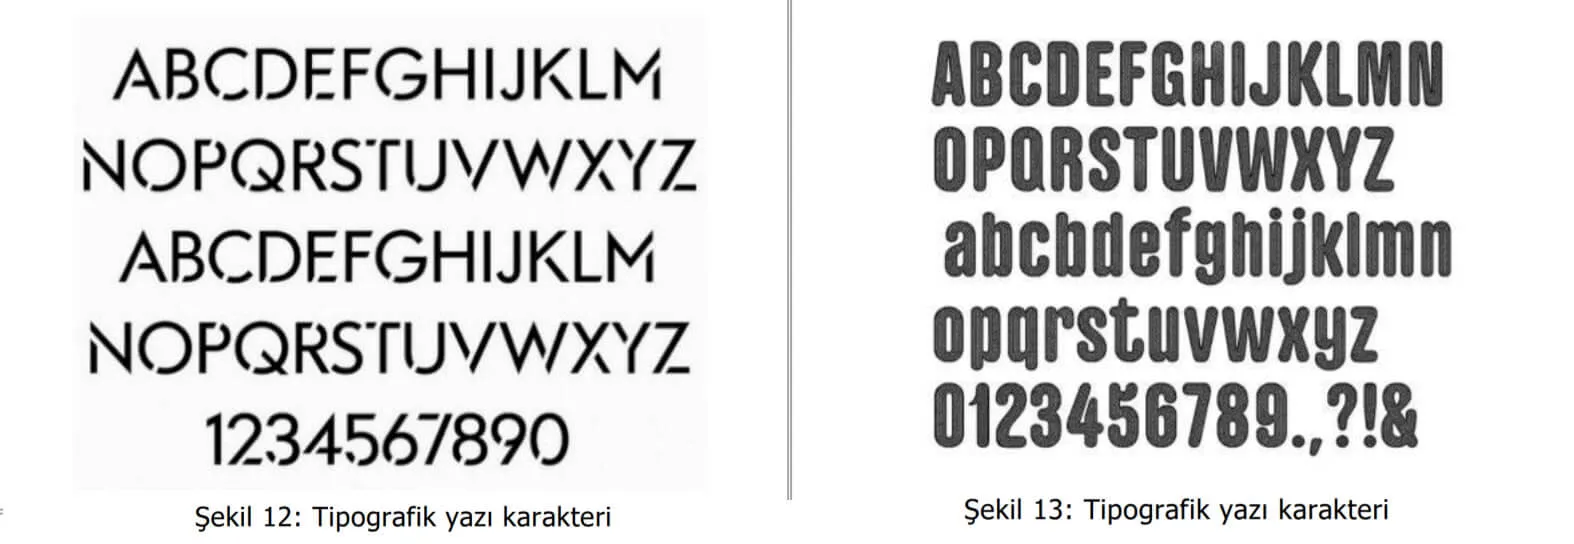 tipografik yazı karakter örnekleri-Kocaeli Patent